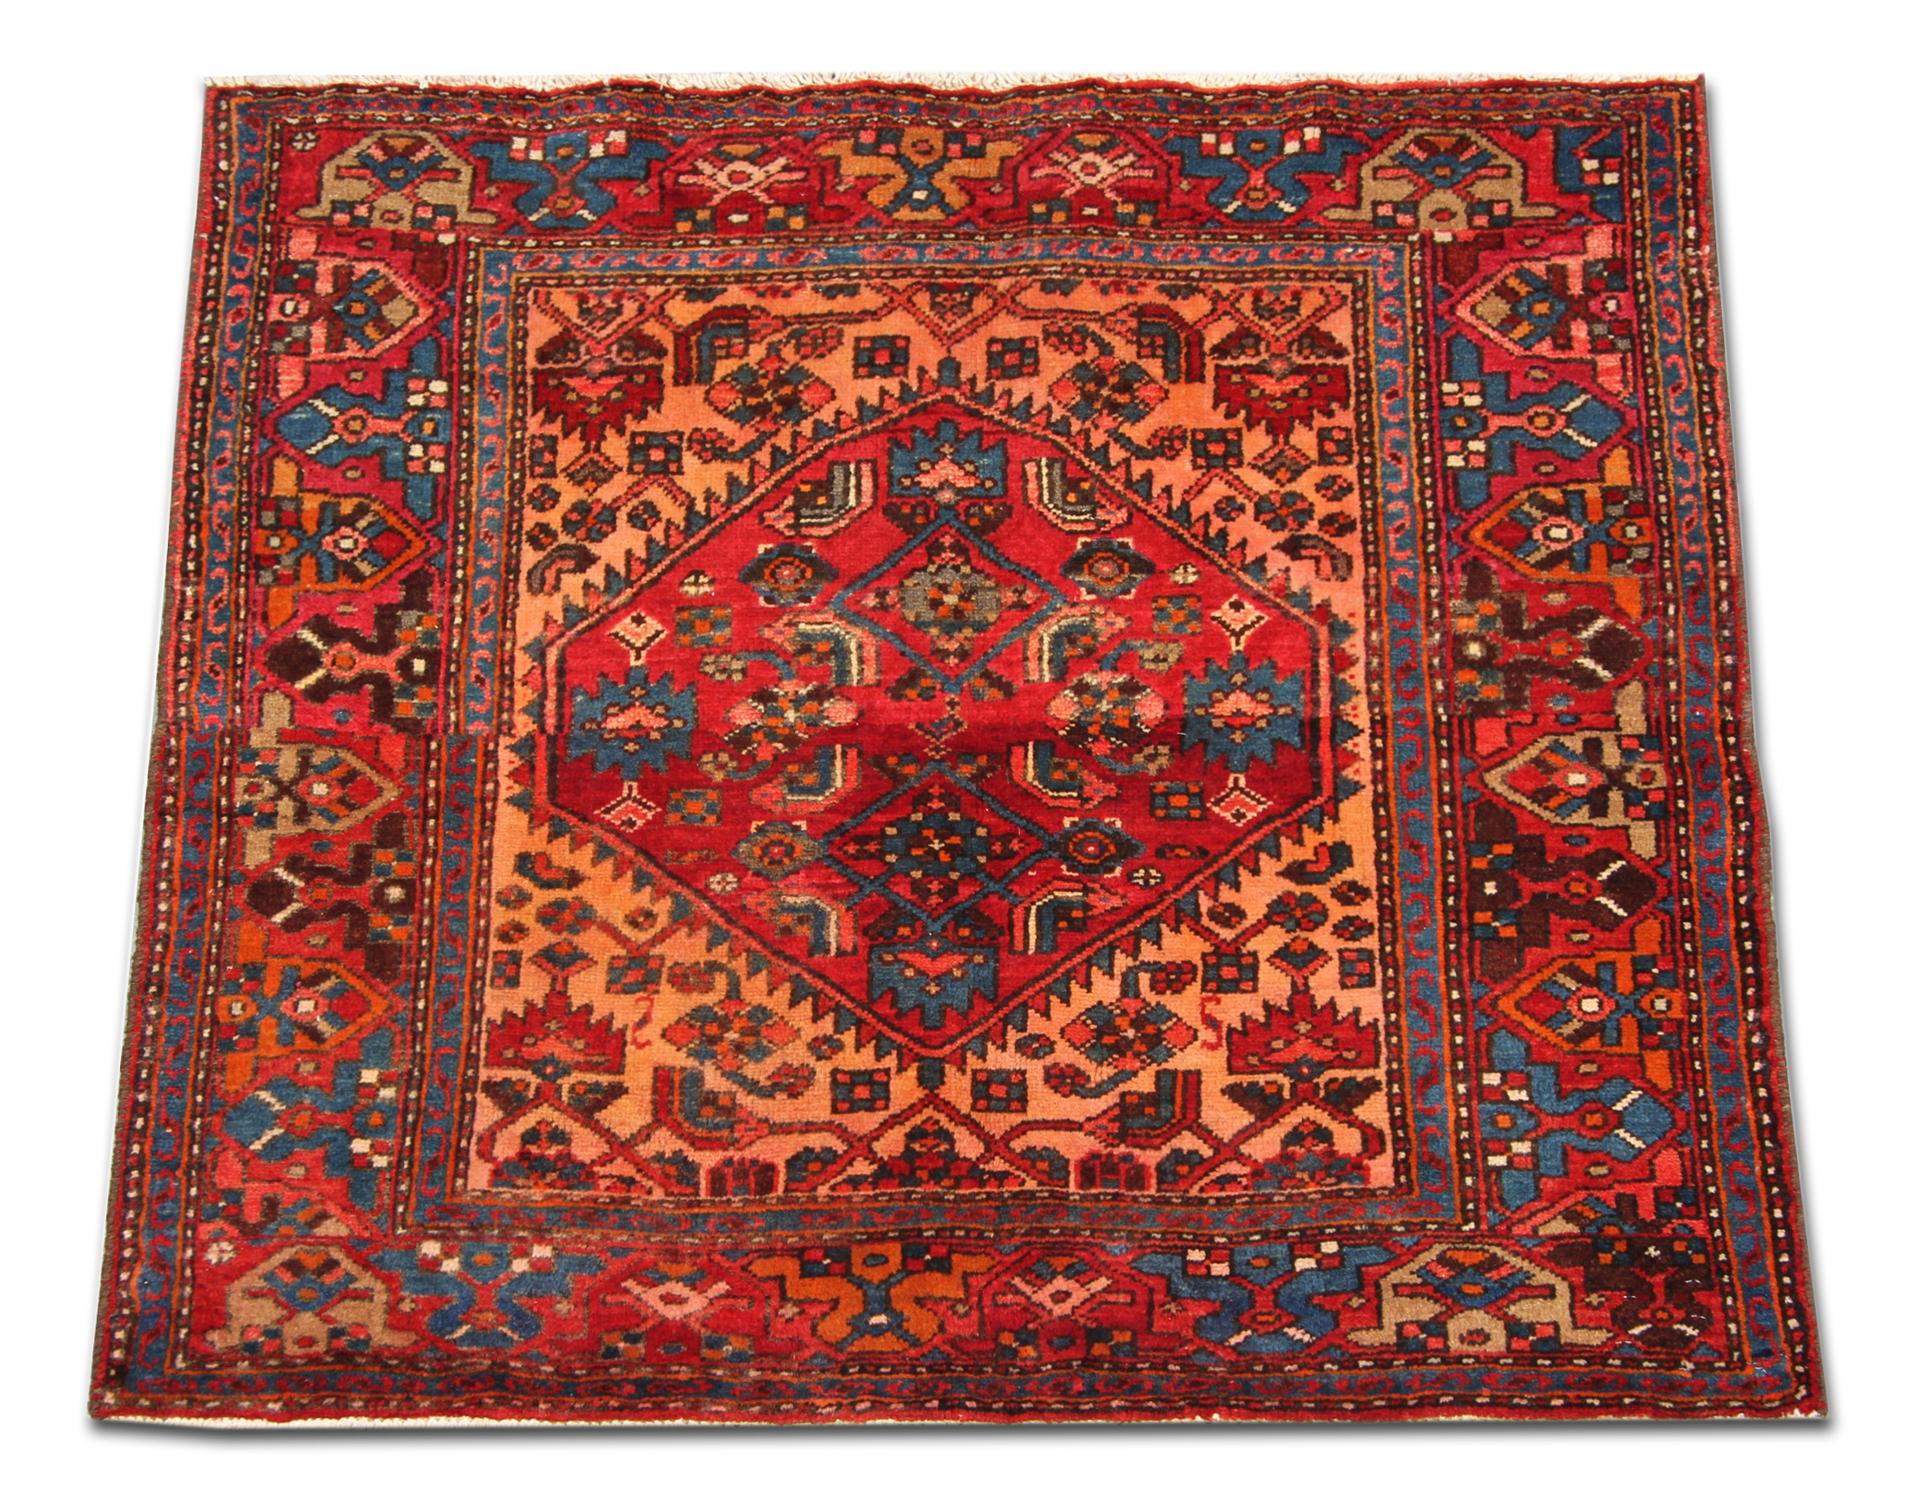 Dieser Teppich aus feiner Wolle wurde mit edlen Materialien von Hand gewebt und zeigt eine reiche Farbpalette aus Rot, Orange, Beige und Blau, die zu einem symmetrischen Stammesmuster gewebt wurden. Das zentrale Medaillon und das umgebende Design